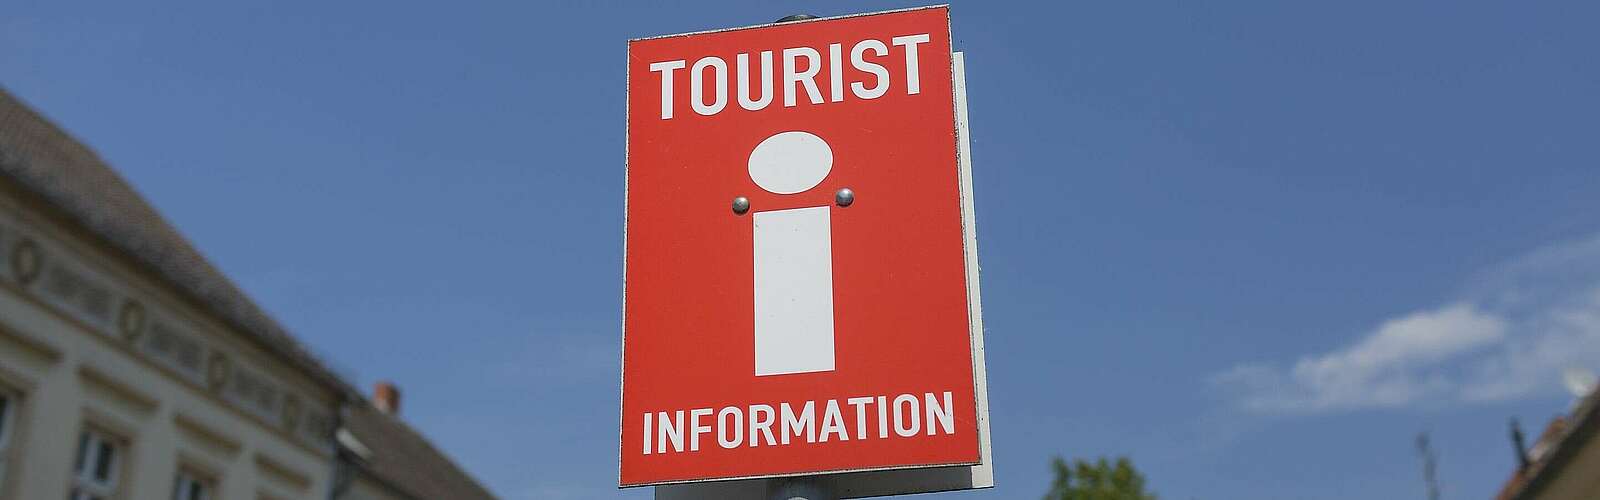 Schild der Touristinformation,
        
    

        Foto: Fotograf / Lizenz - Media Import/Steffen Lehmann